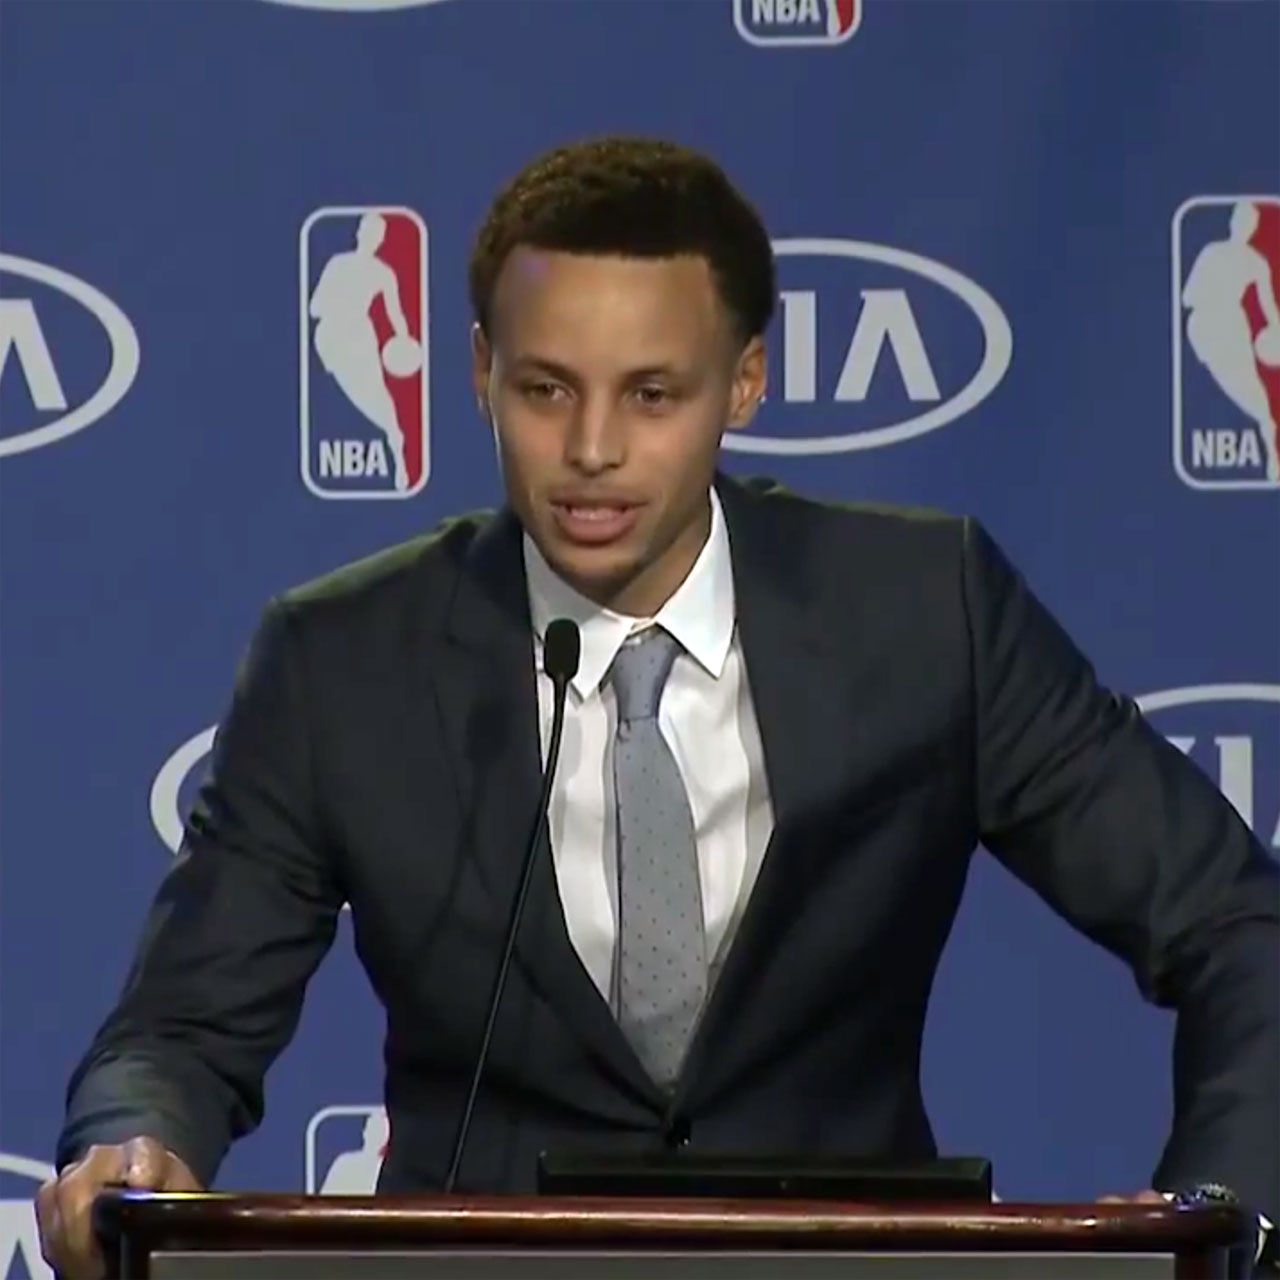 Stephen Curry gives NBA MVP speech